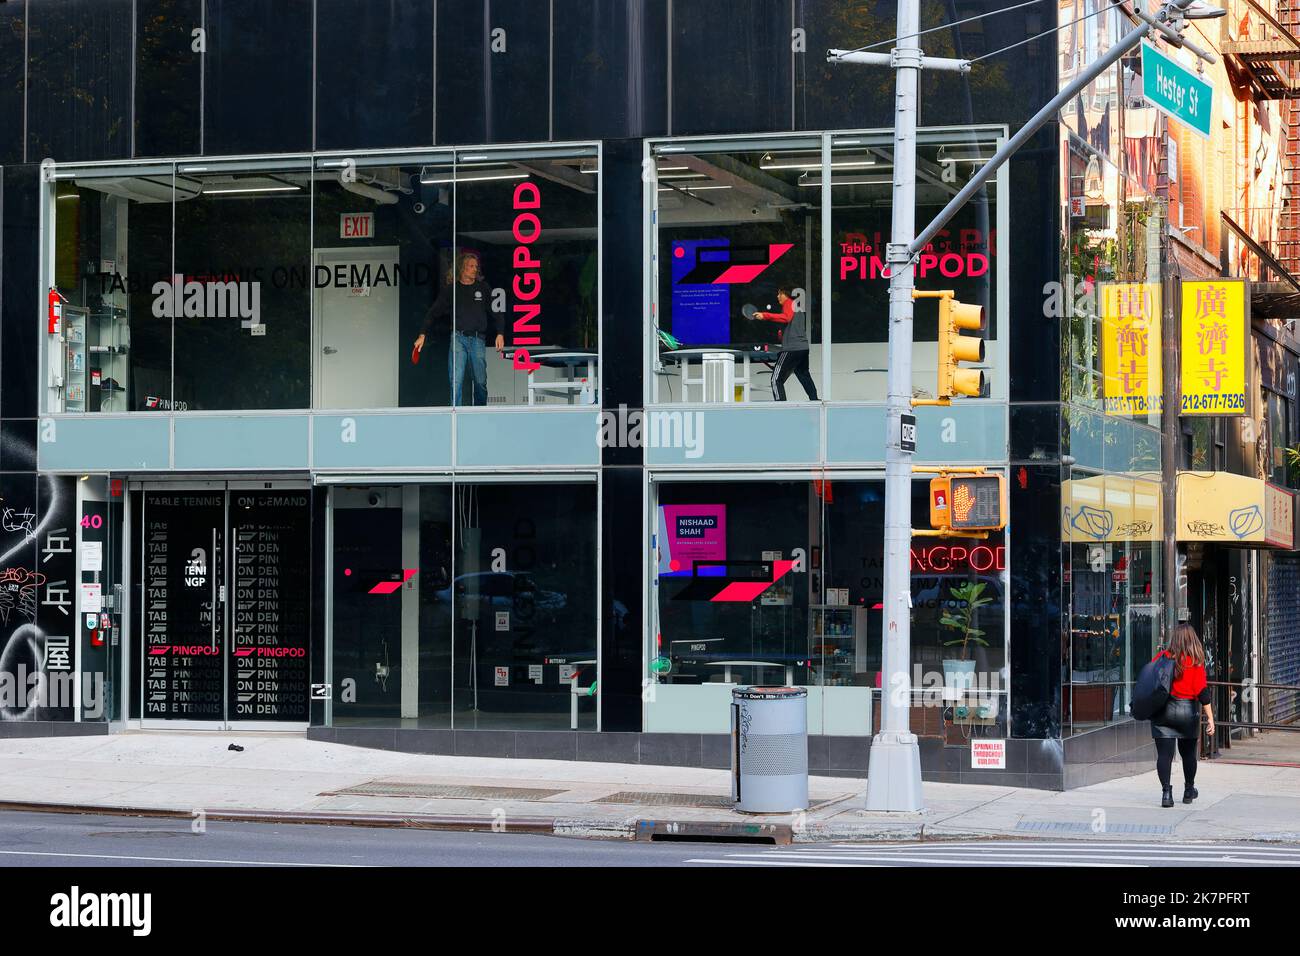 PingPod, 42 Allen St, New York, New York, New York photo d'un site de location de tennis de table dans le quartier chinois de Manhattan. Banque D'Images